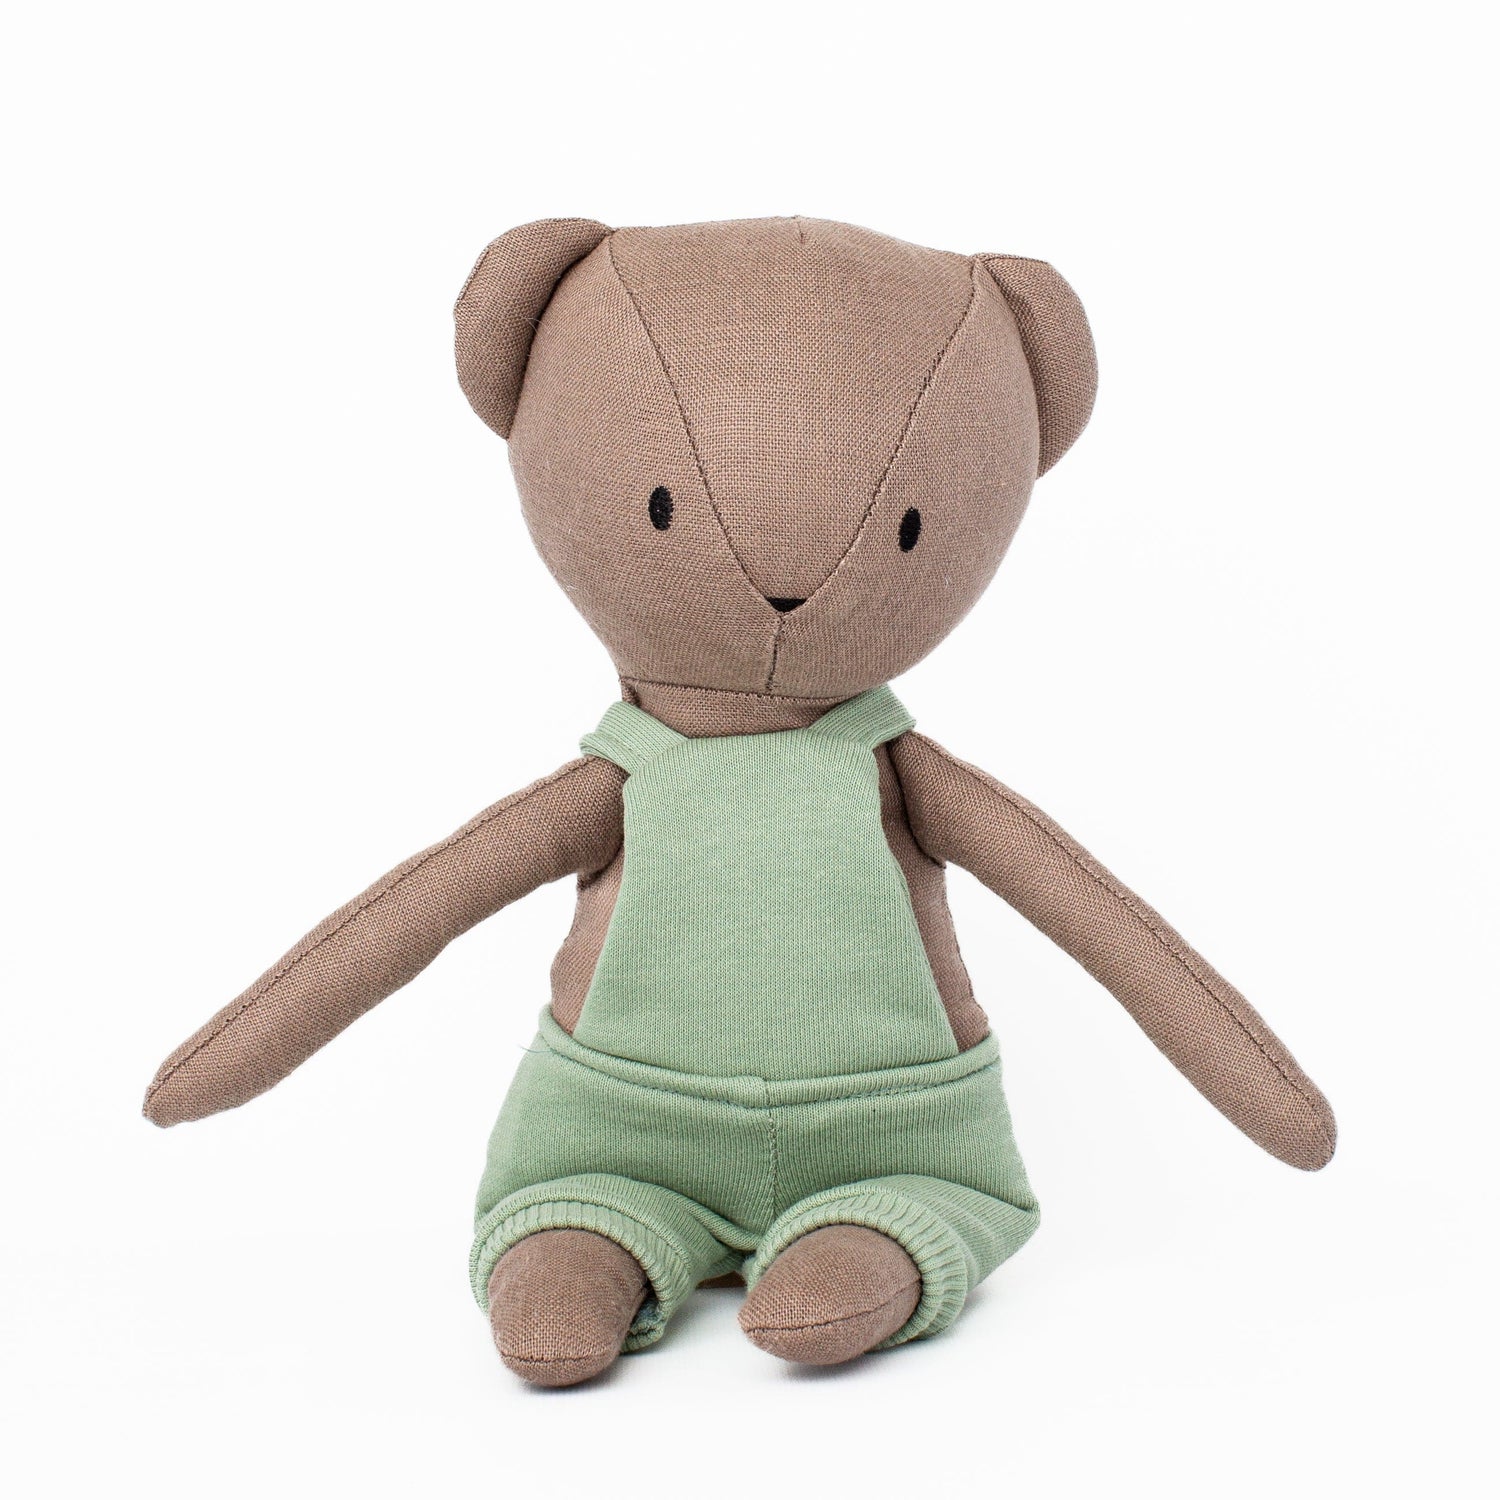 Huggabeau Soft Toys Huggabeau Coco Bear in Mint Green Shortalls (Handmade in Canada) Huggabeau Coco Bear in Mint Green Shortalls